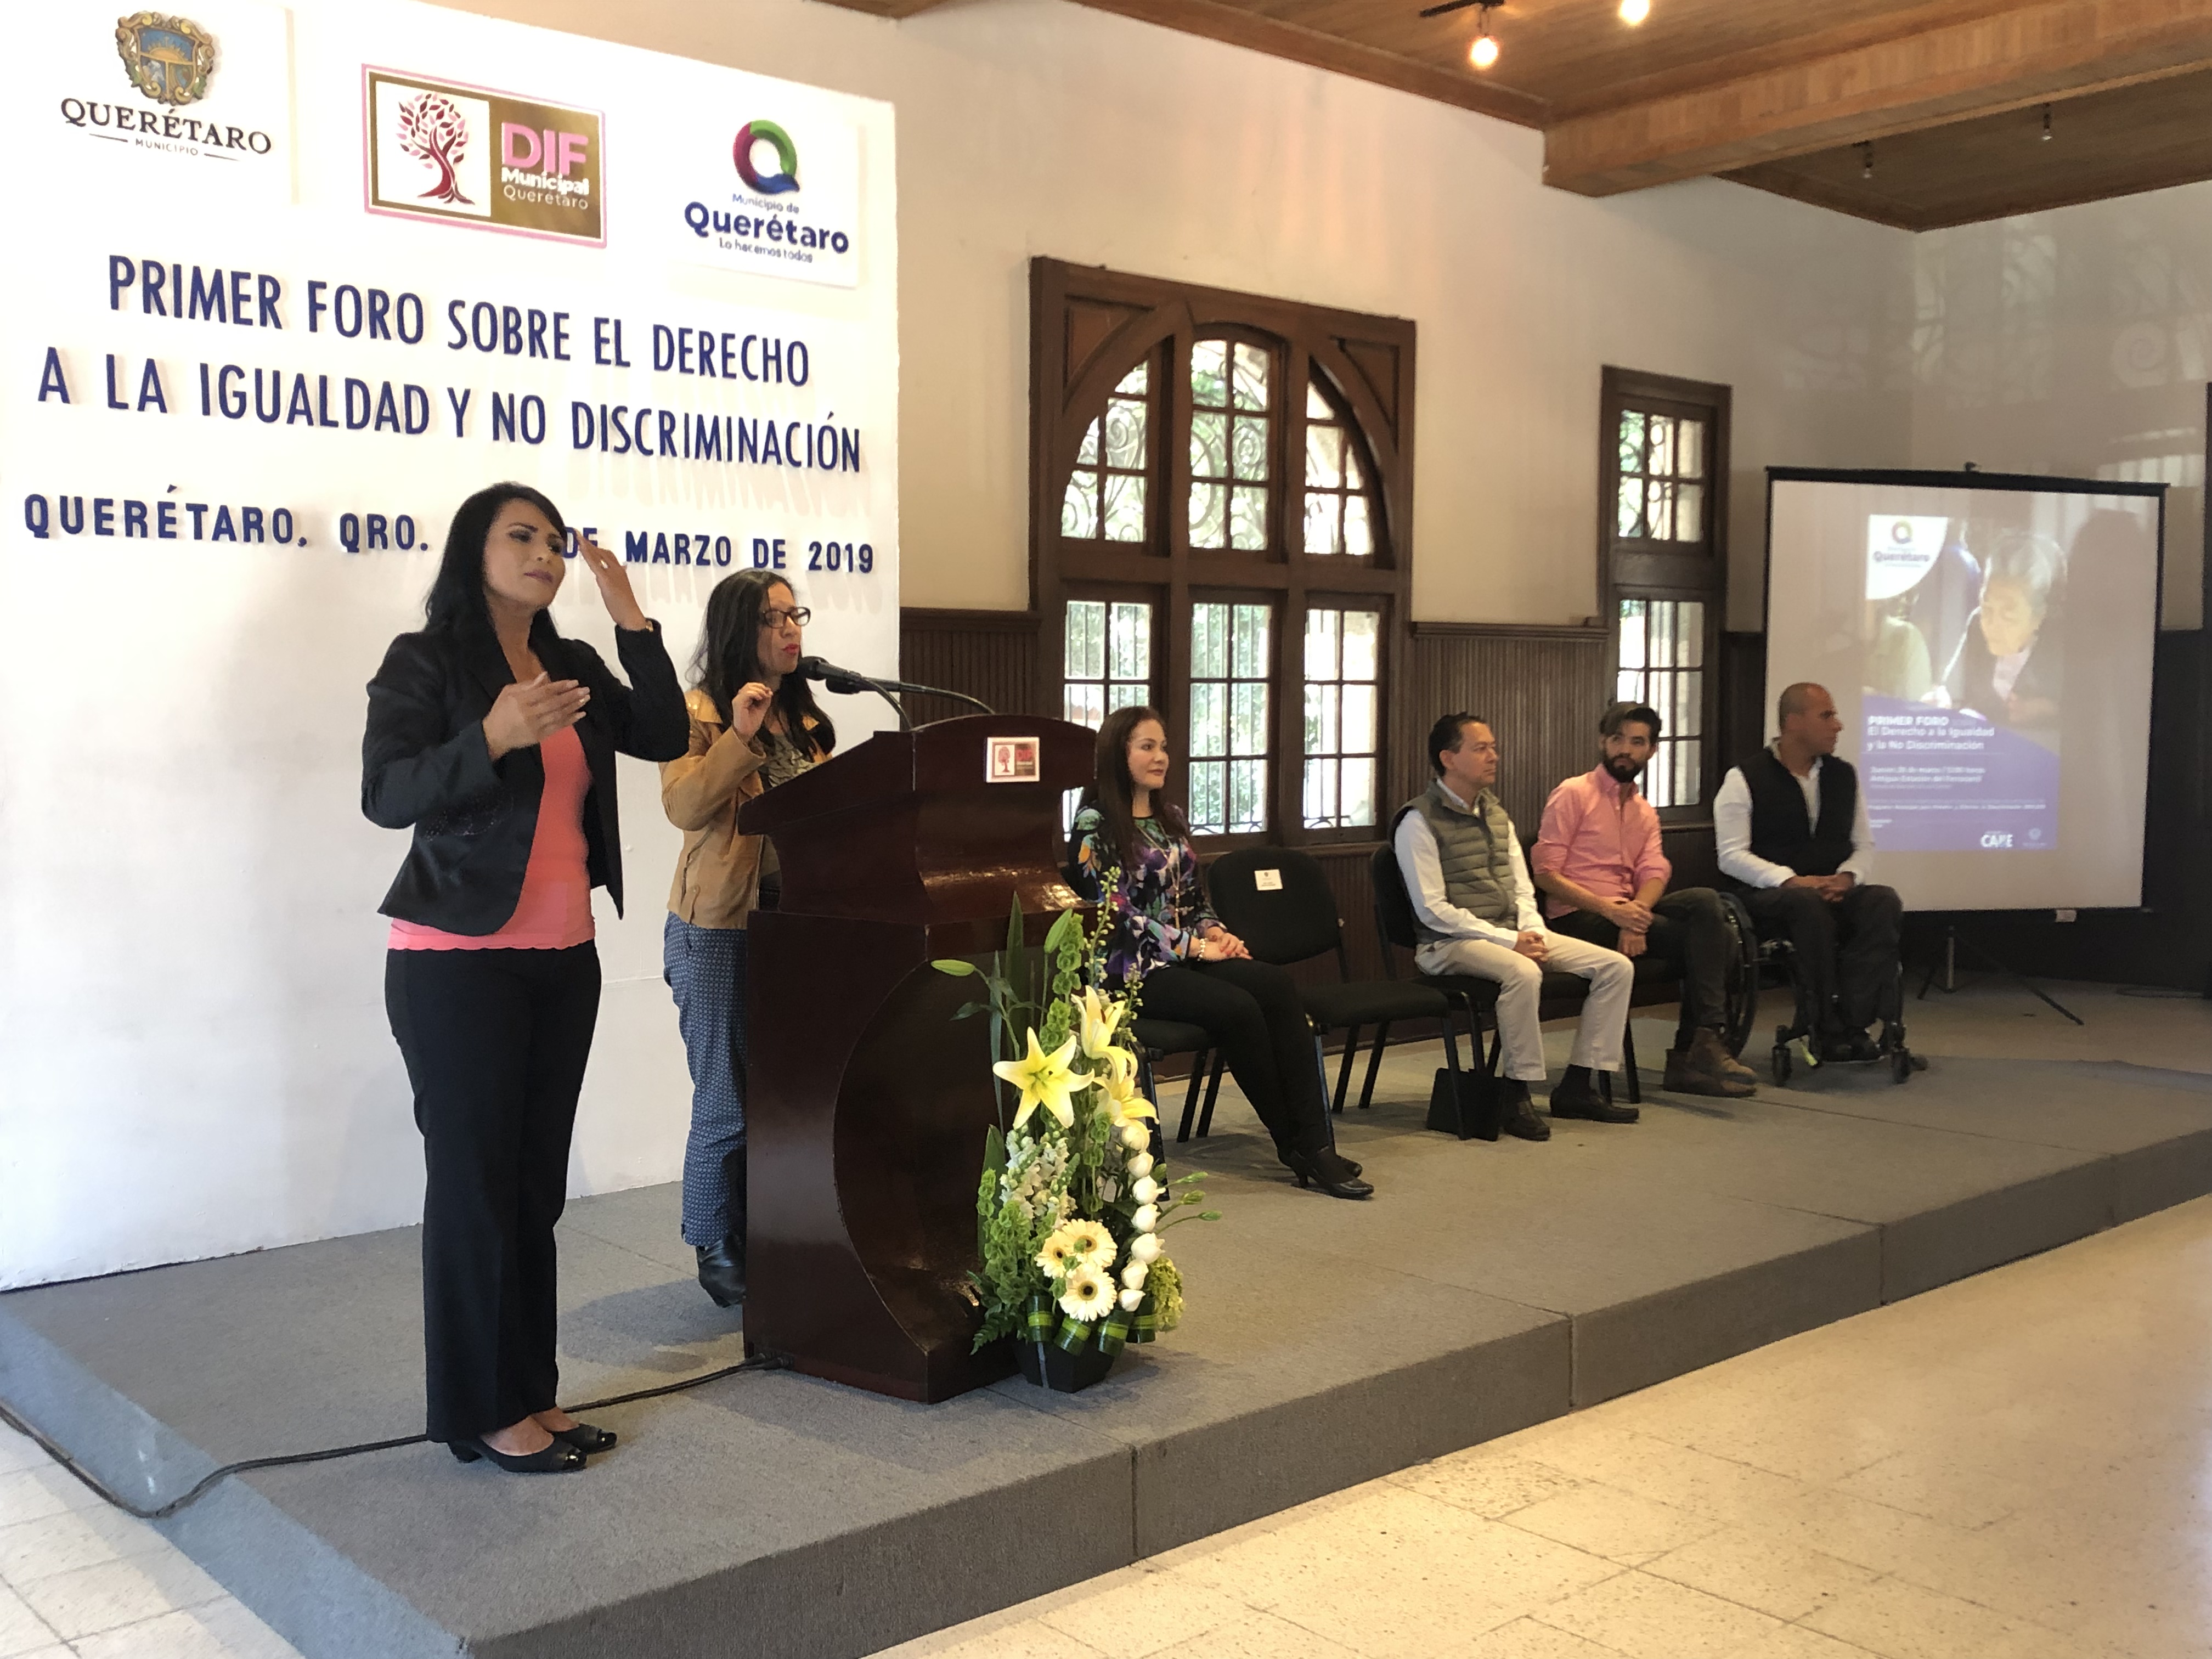  Inauguran foro sobre Derecho a la Igualdad y no Discriminación en Querétaro